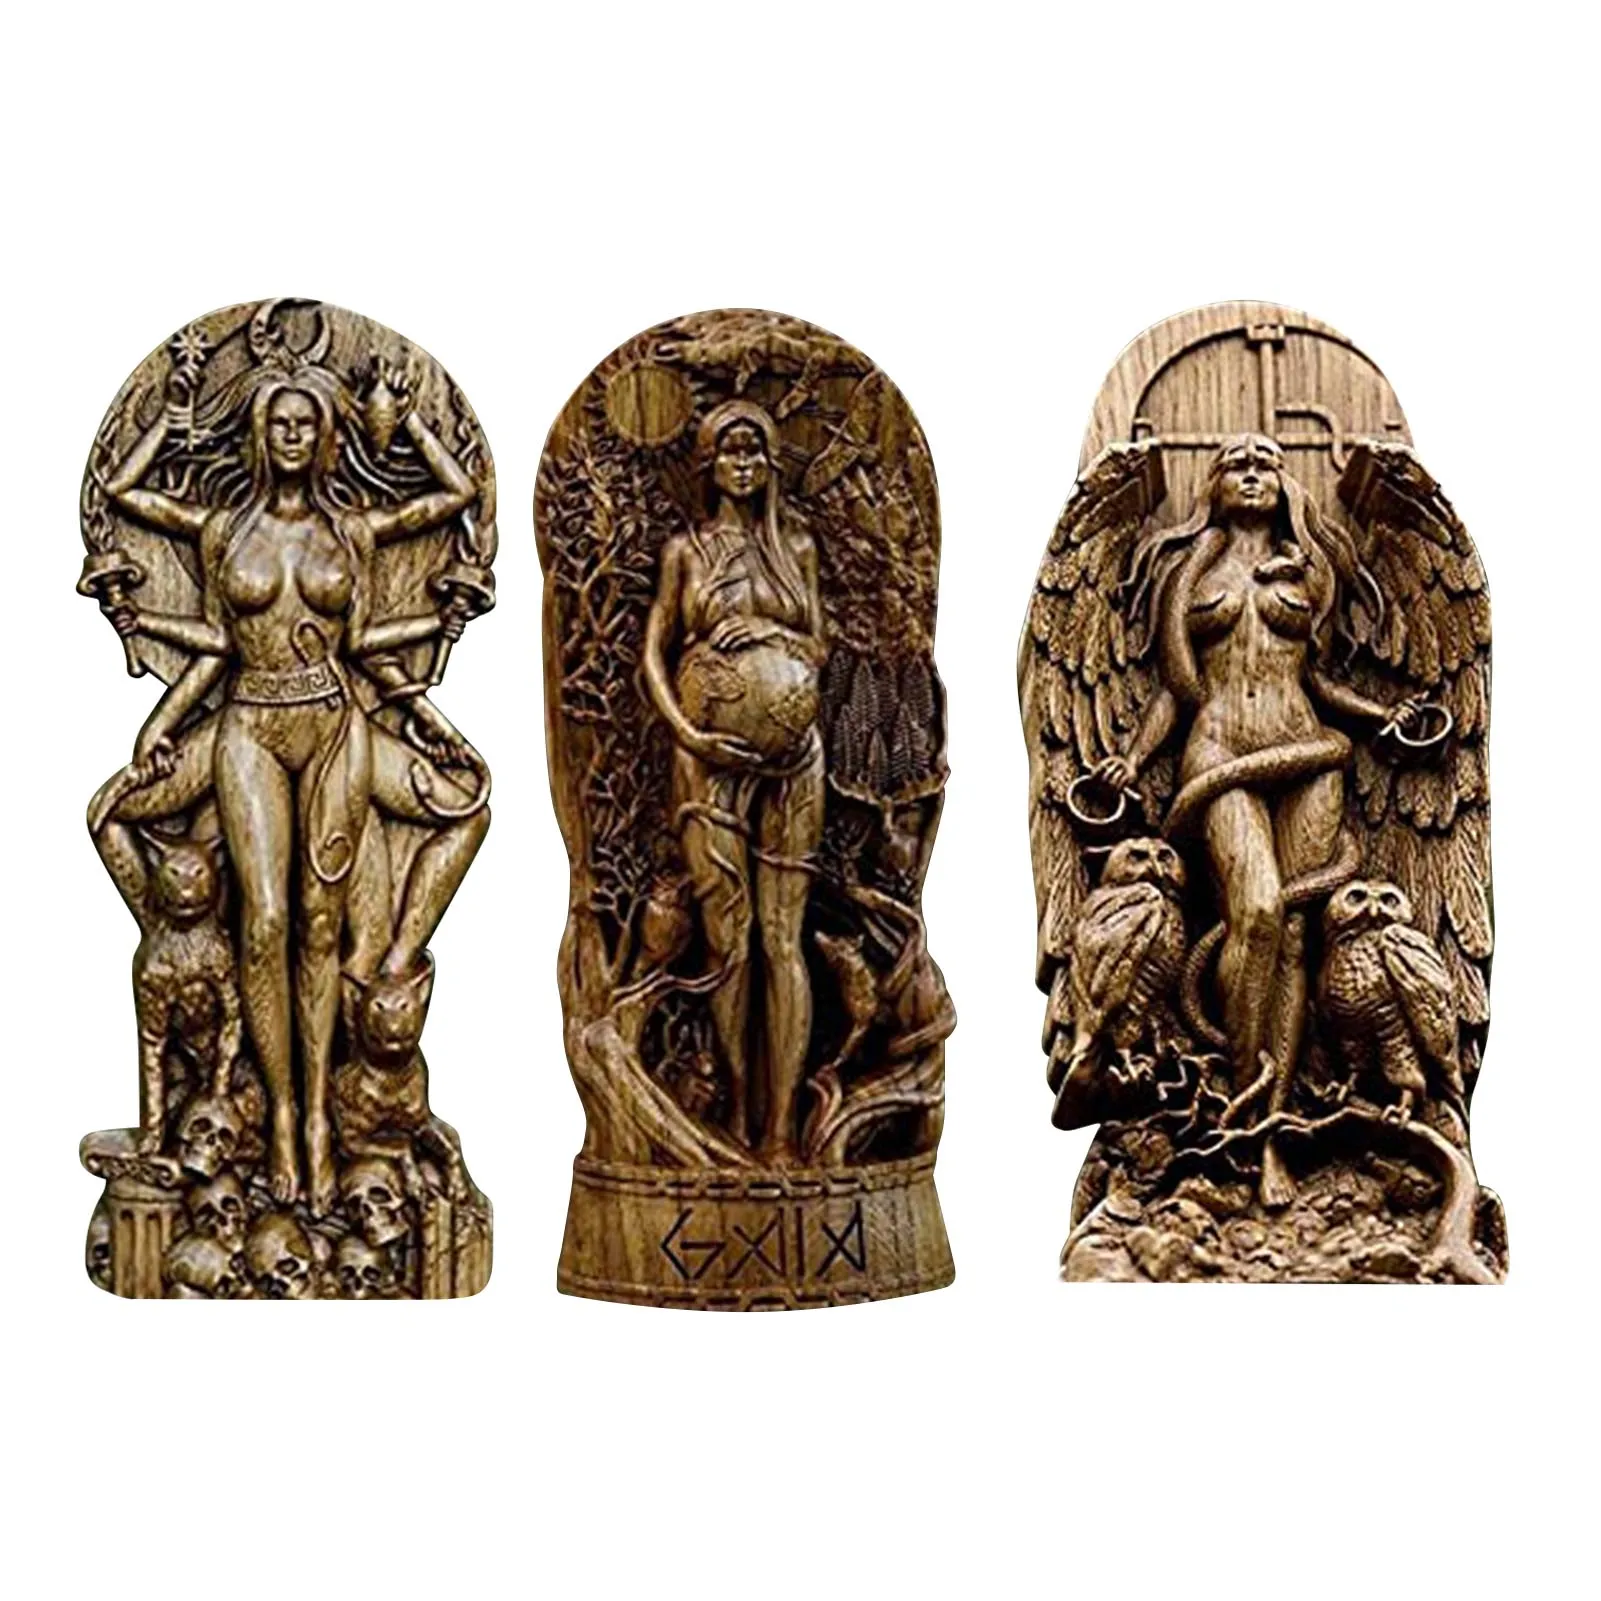 Goddess Statues Goddess Sculptures Hand-made Sculpture Art Ornaments Home Decor Ideal Gift Reasonable